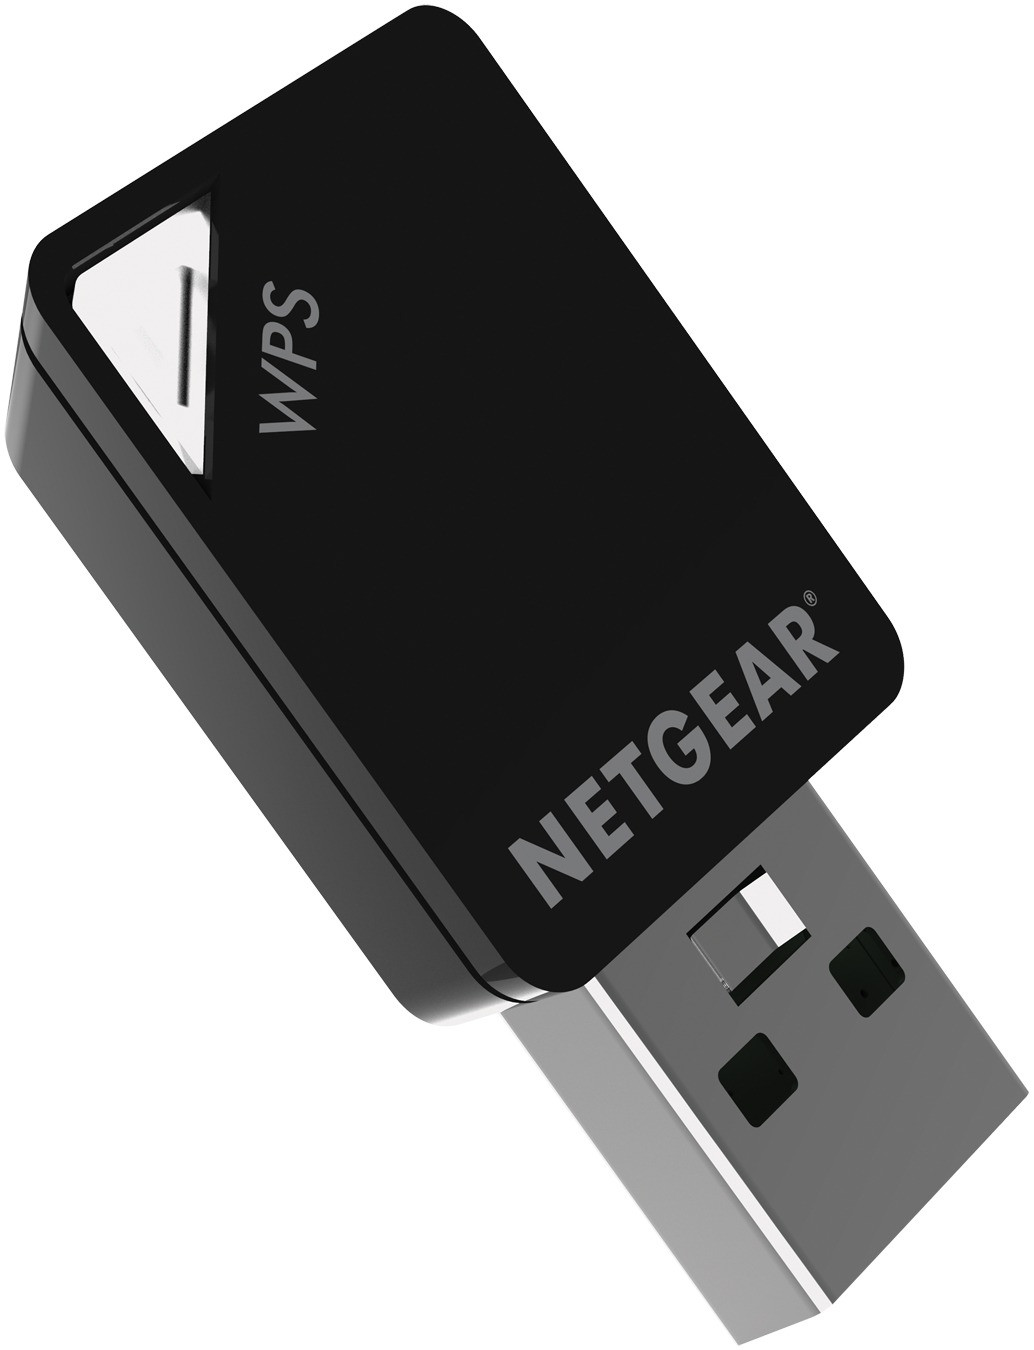 Netgear A6100 Dual-Band WiFi-miniadapter Desktop accessoire Zwart